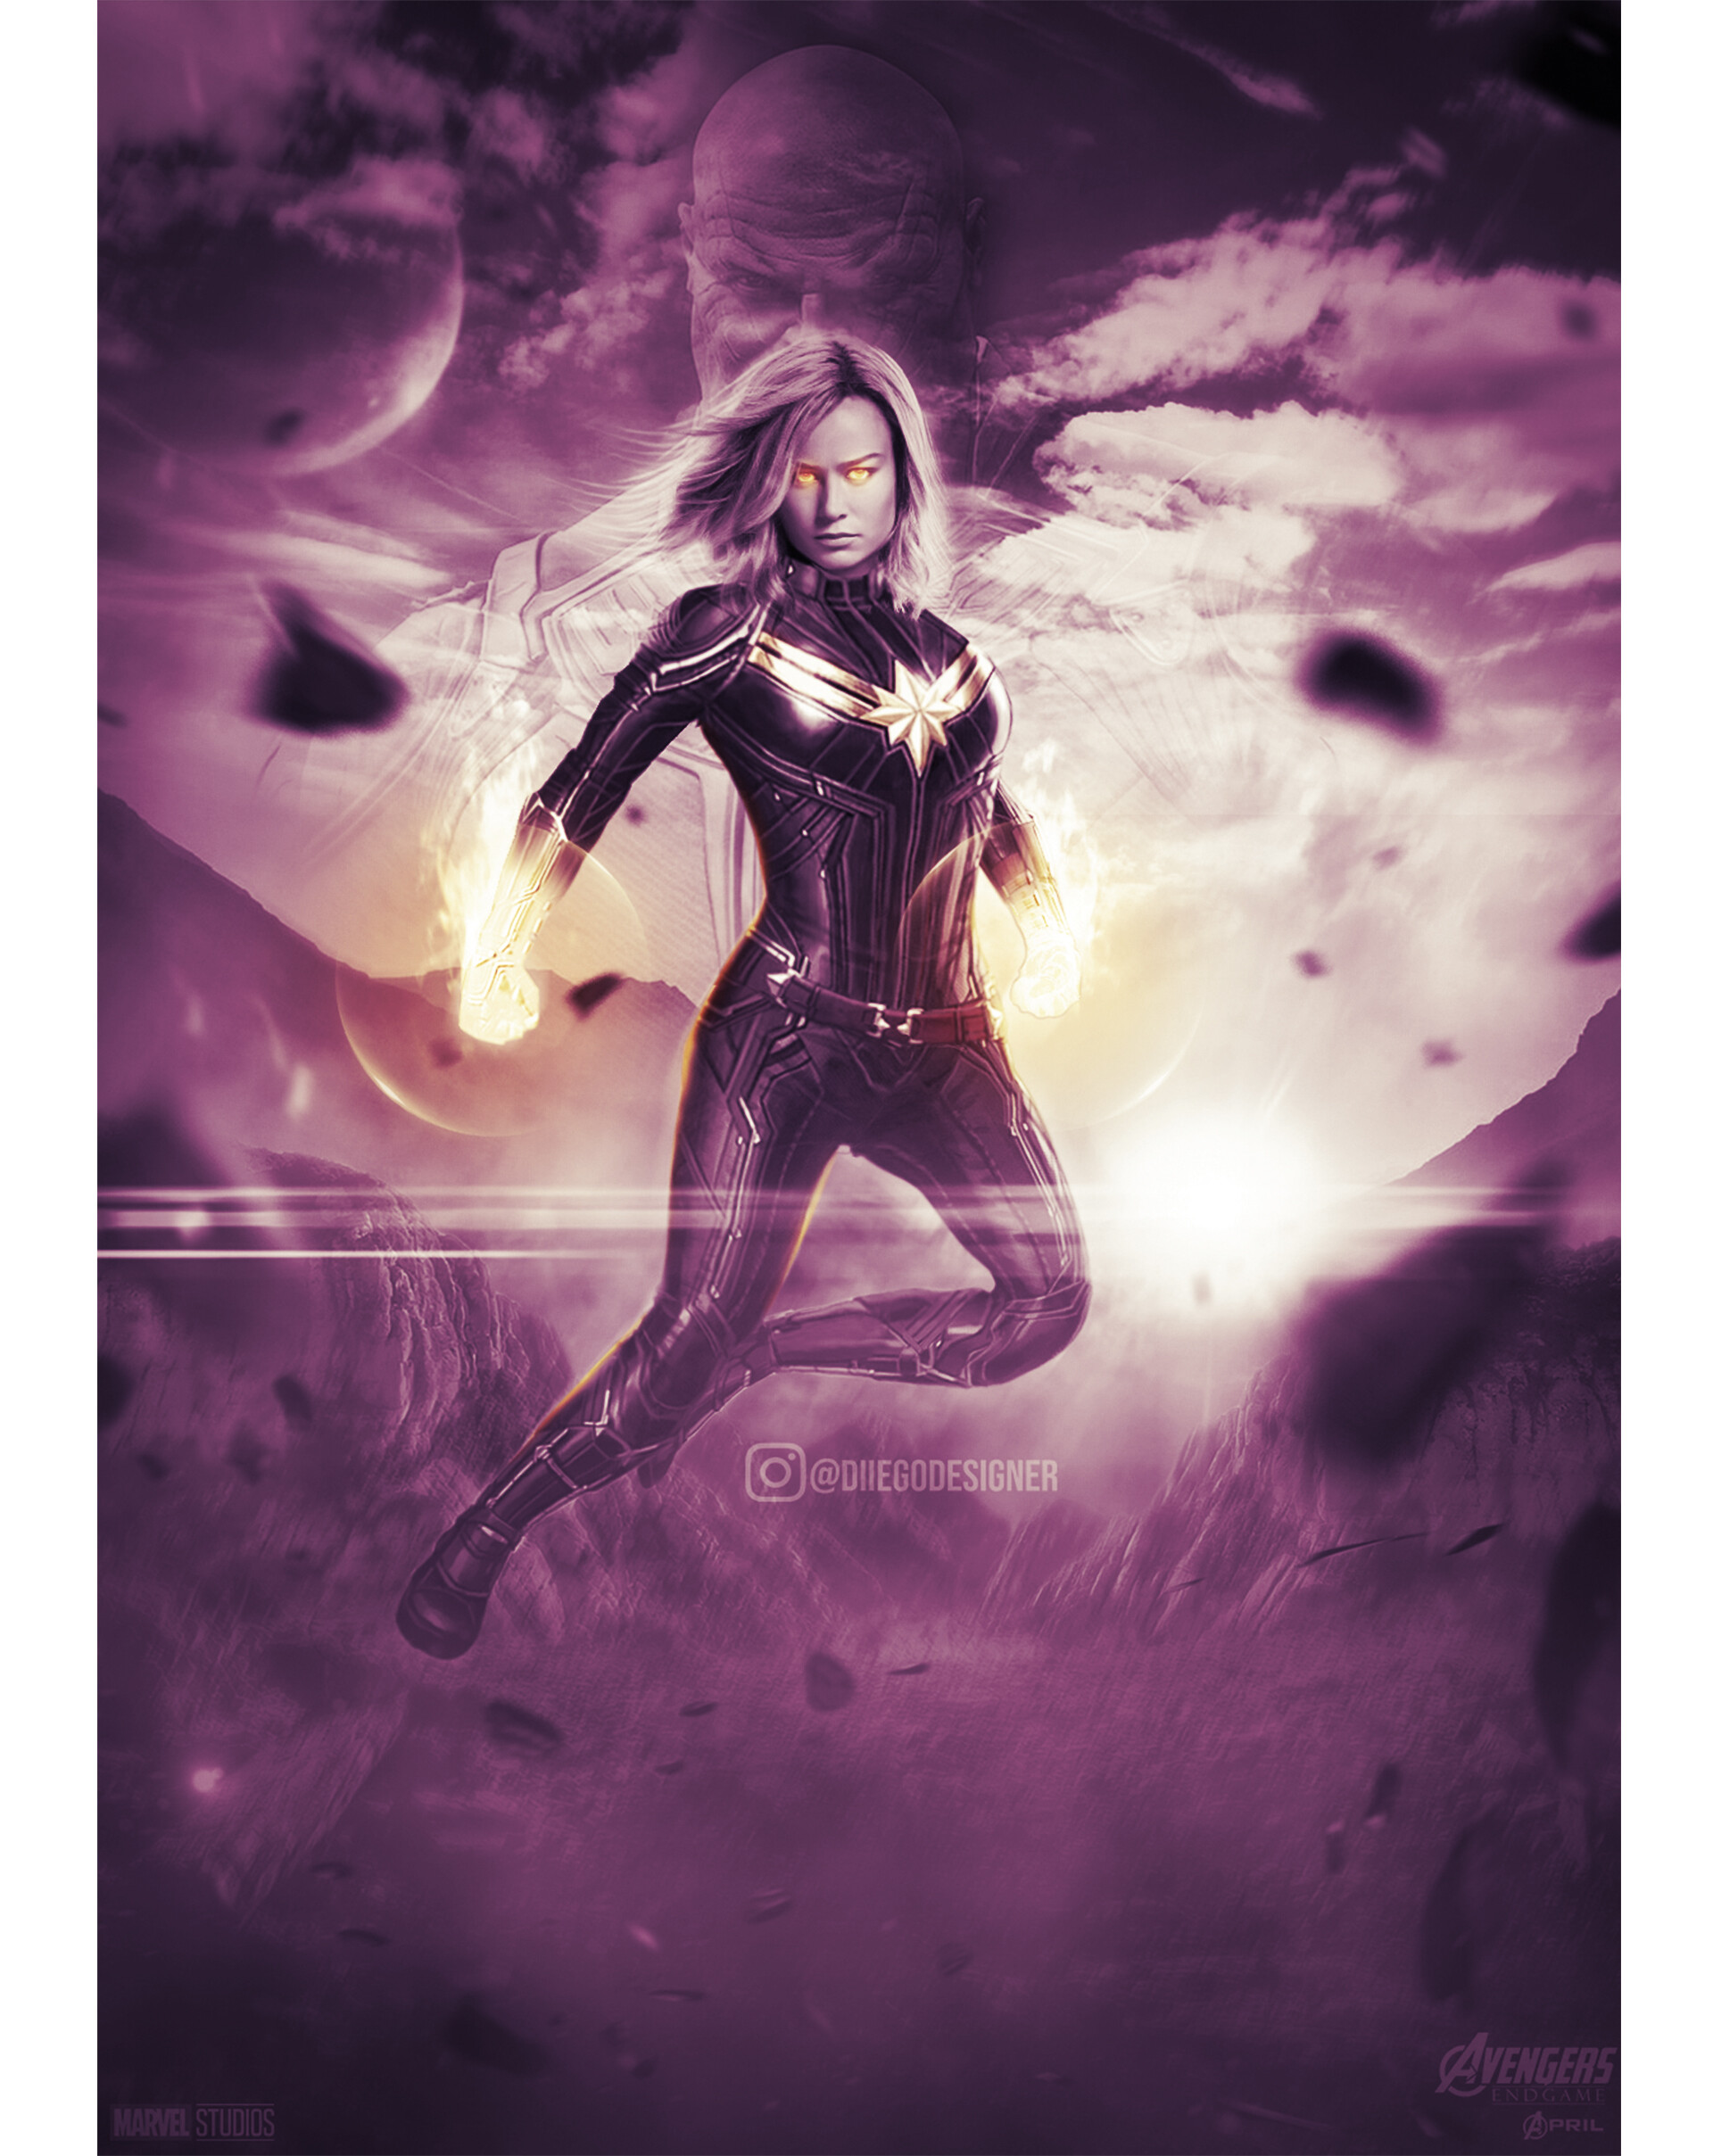 ArtStation - Avengers end game poster design